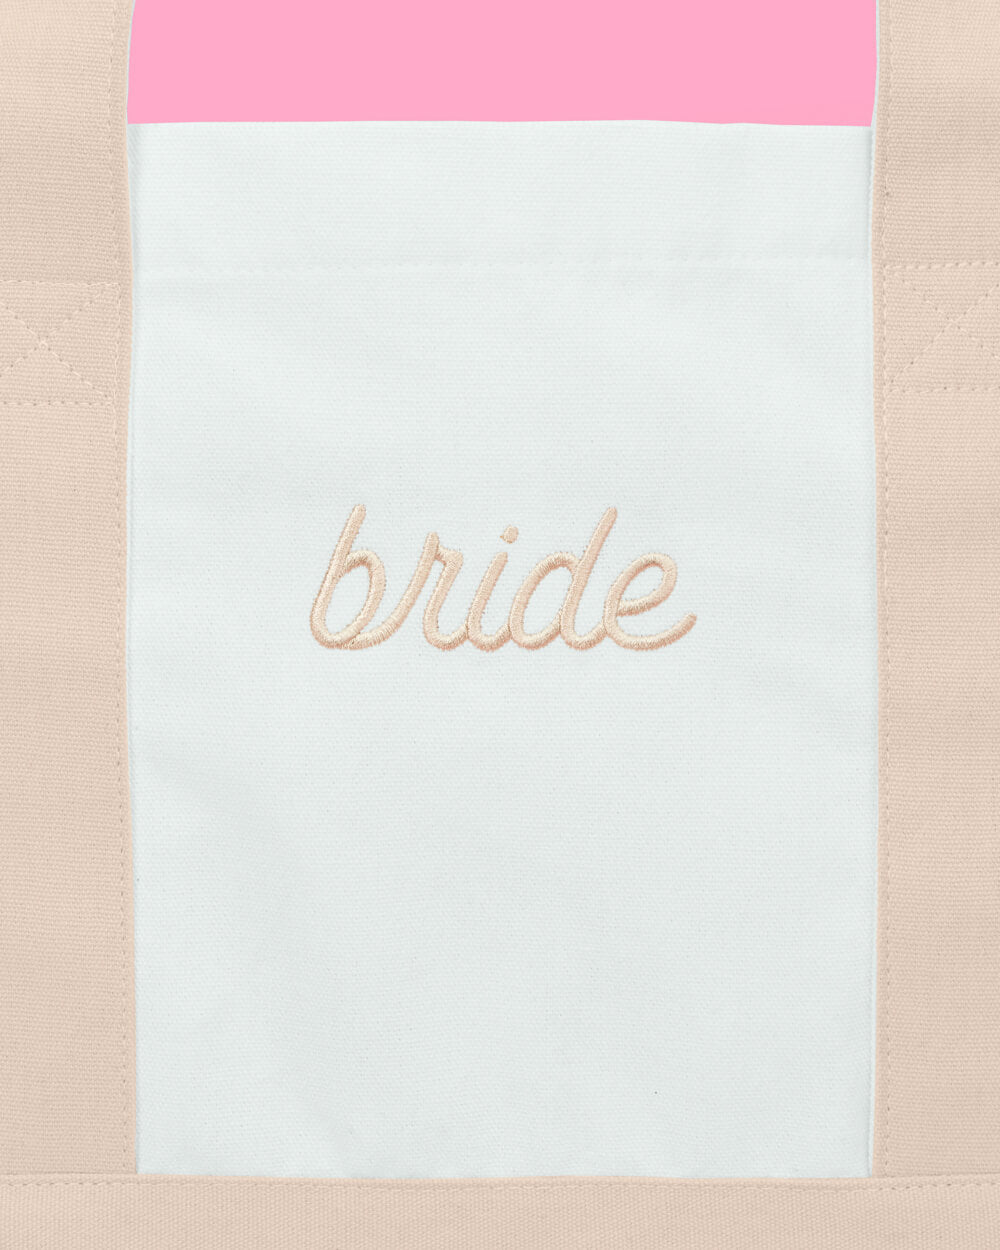 Beige Bride Tote - embroidered cotton tote